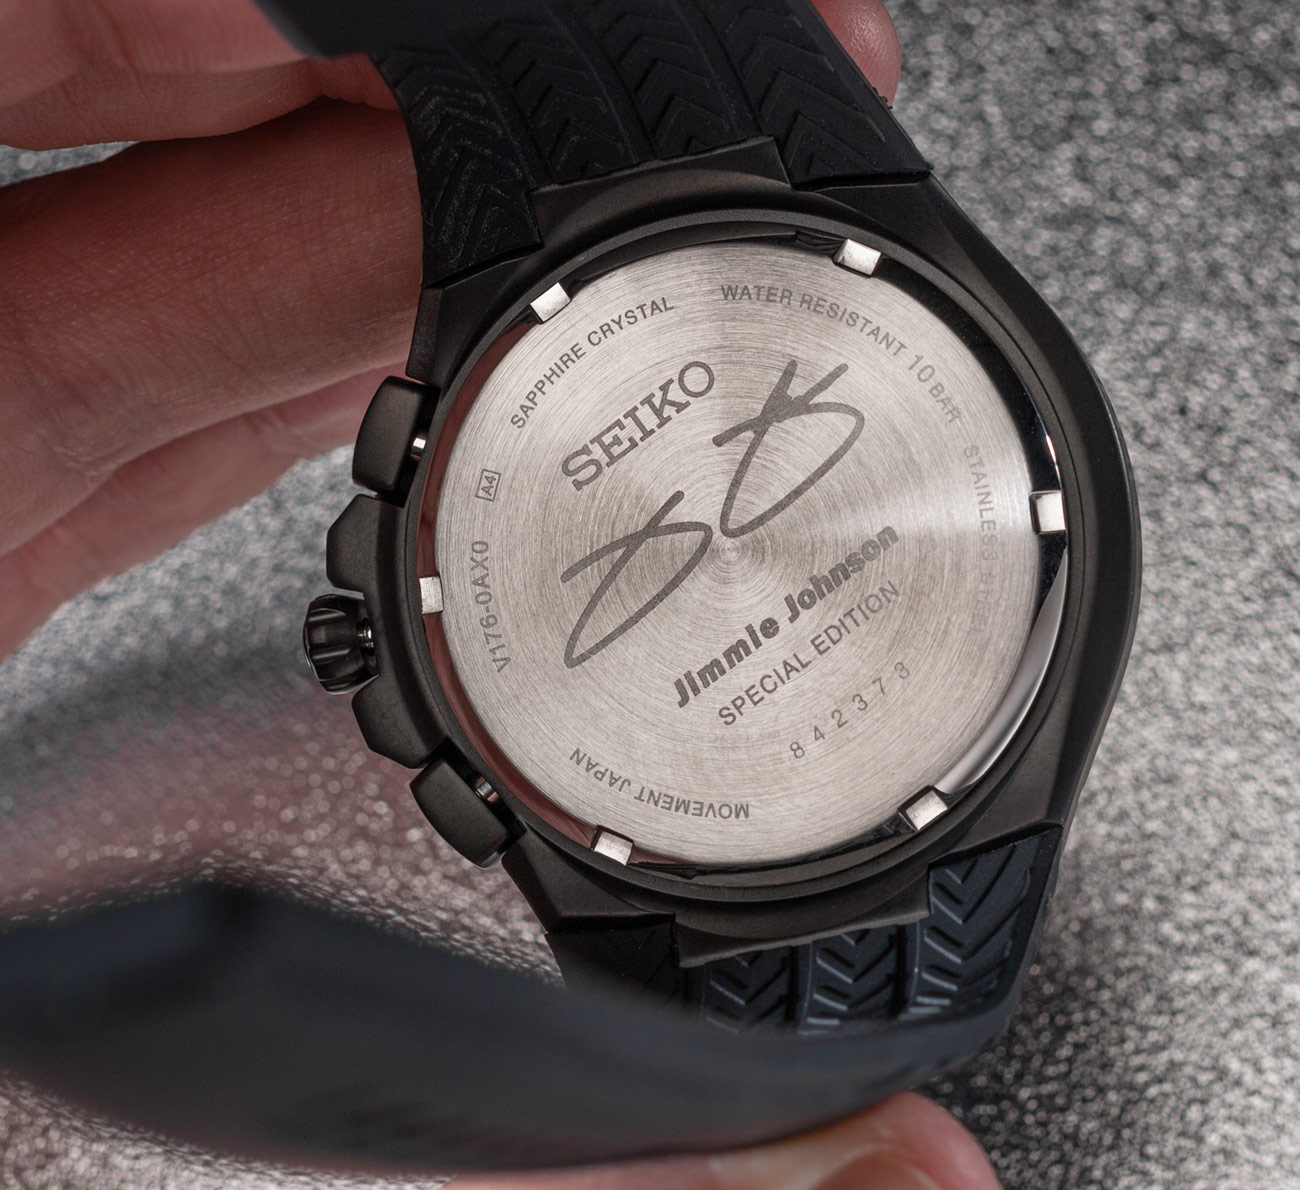 SEIKO[セイコー] JIMMY JOHNSON CHRONO メンズ 腕時計 SSC637 (SEIKO